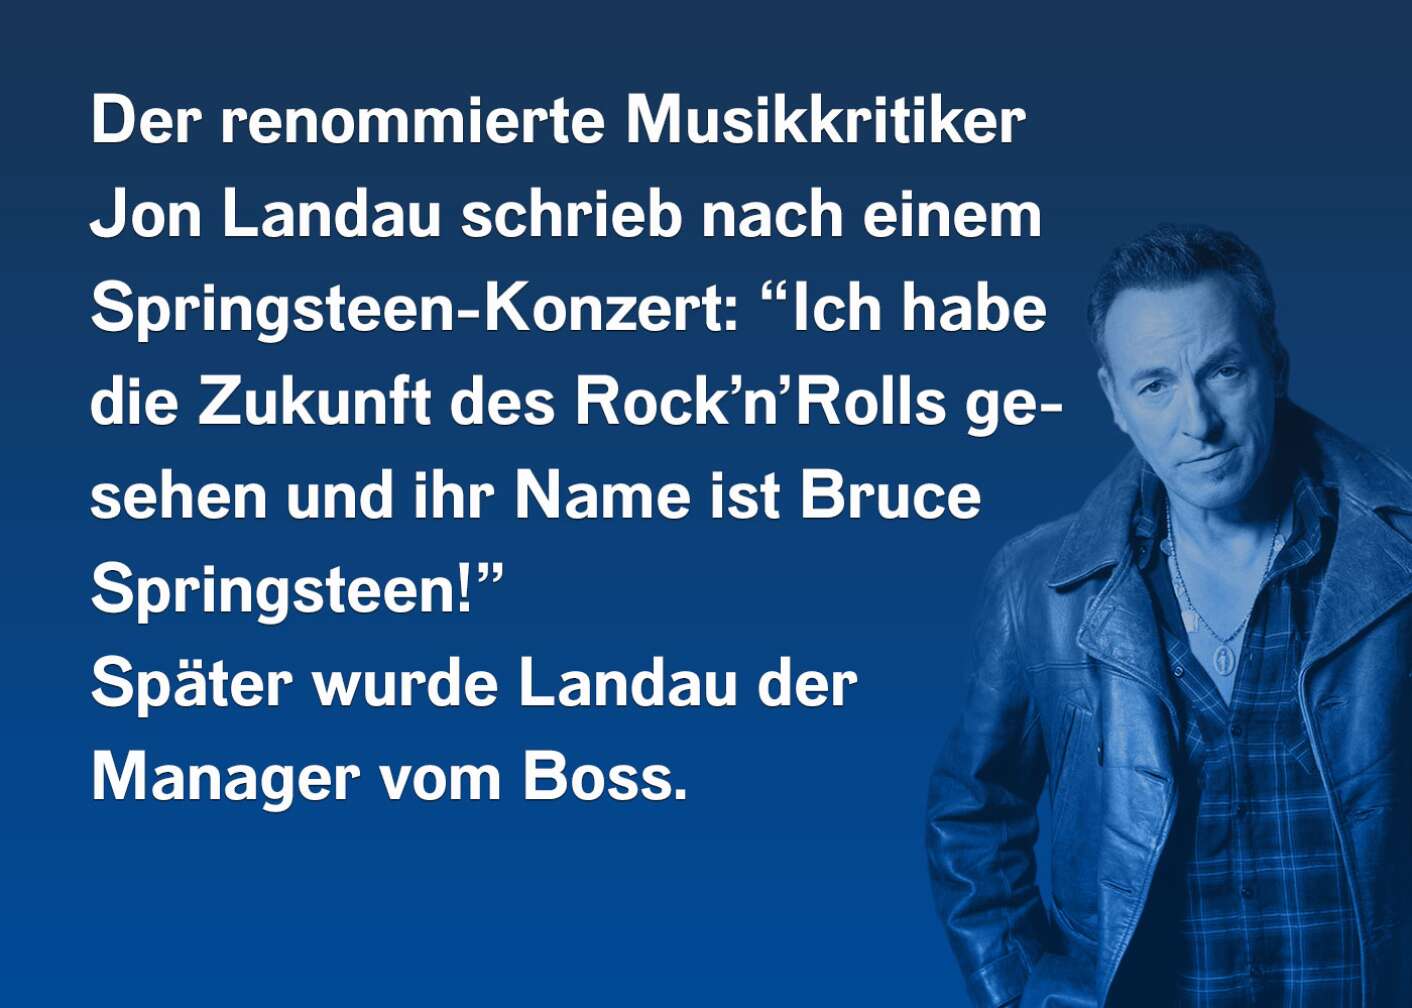 Der renommierte Musikkritiker Jon Landau schrieb nach einem Springsteen-Konzert: "Ich habe die Zukunft des Rock'n'Rolls gesehen und ihr Name ist Bruce Springsteen!" Später wurde Landau der Manager vom Boss.